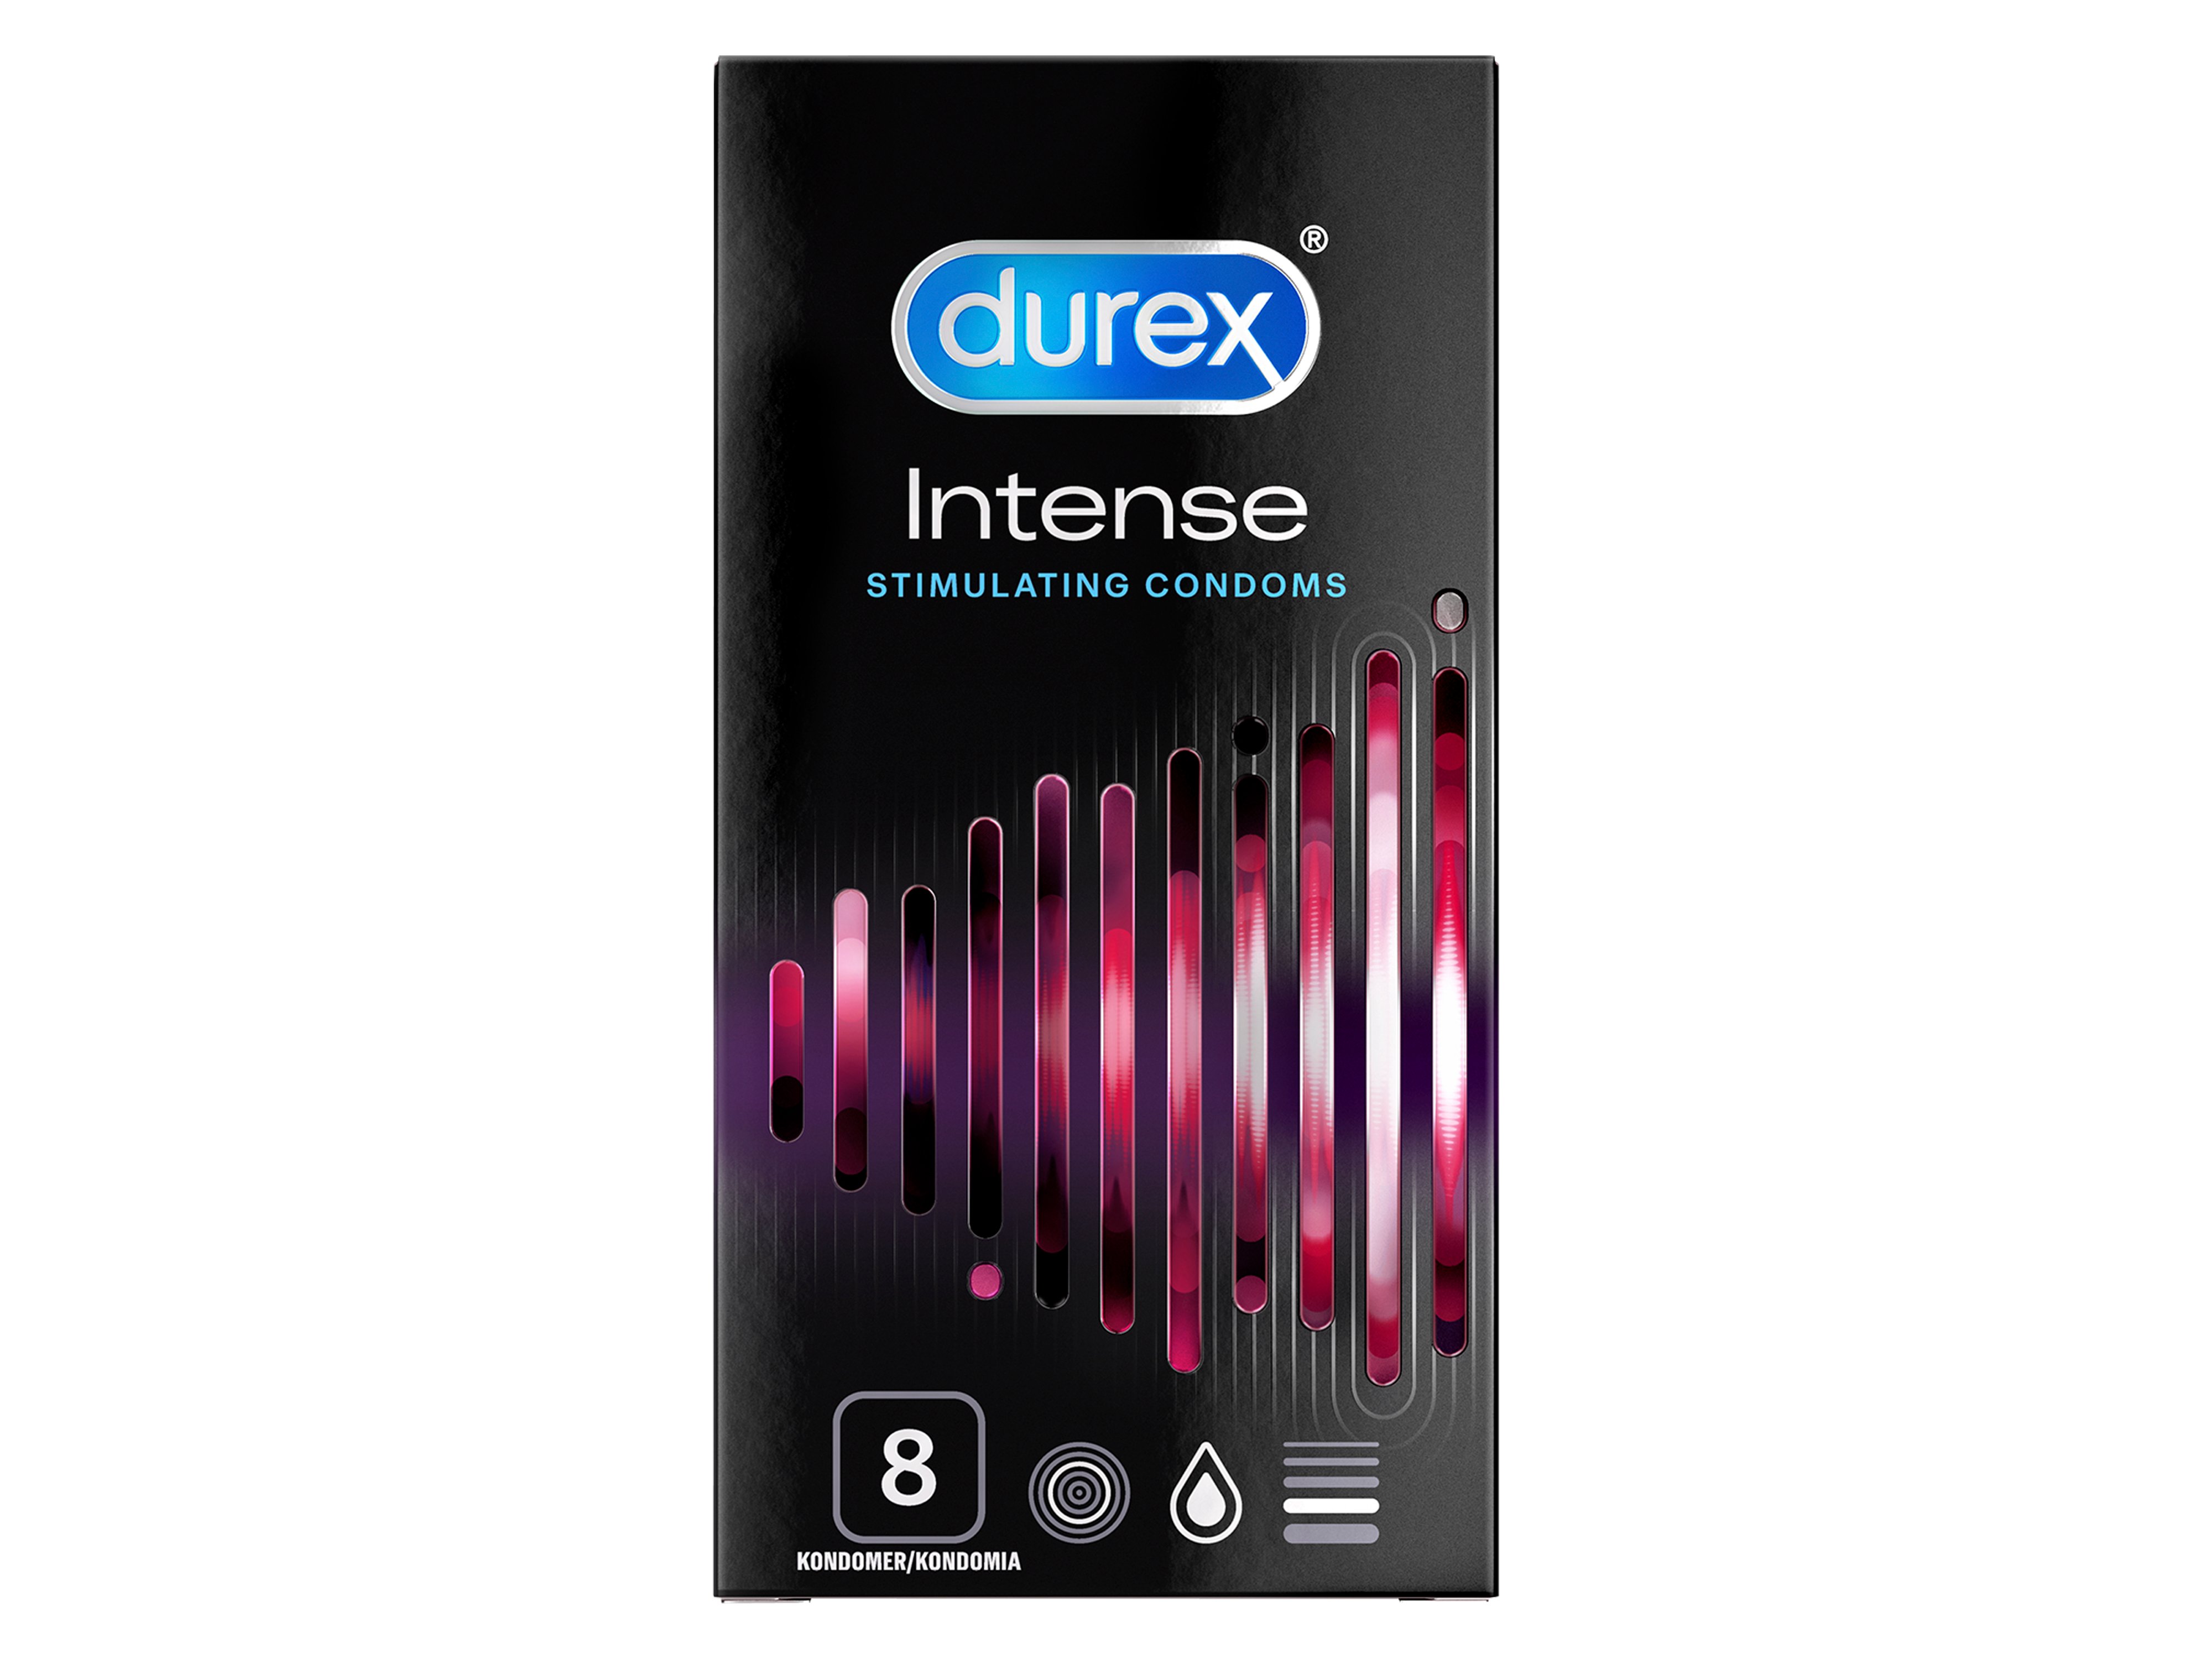 Durex intense kondom, 8 stk